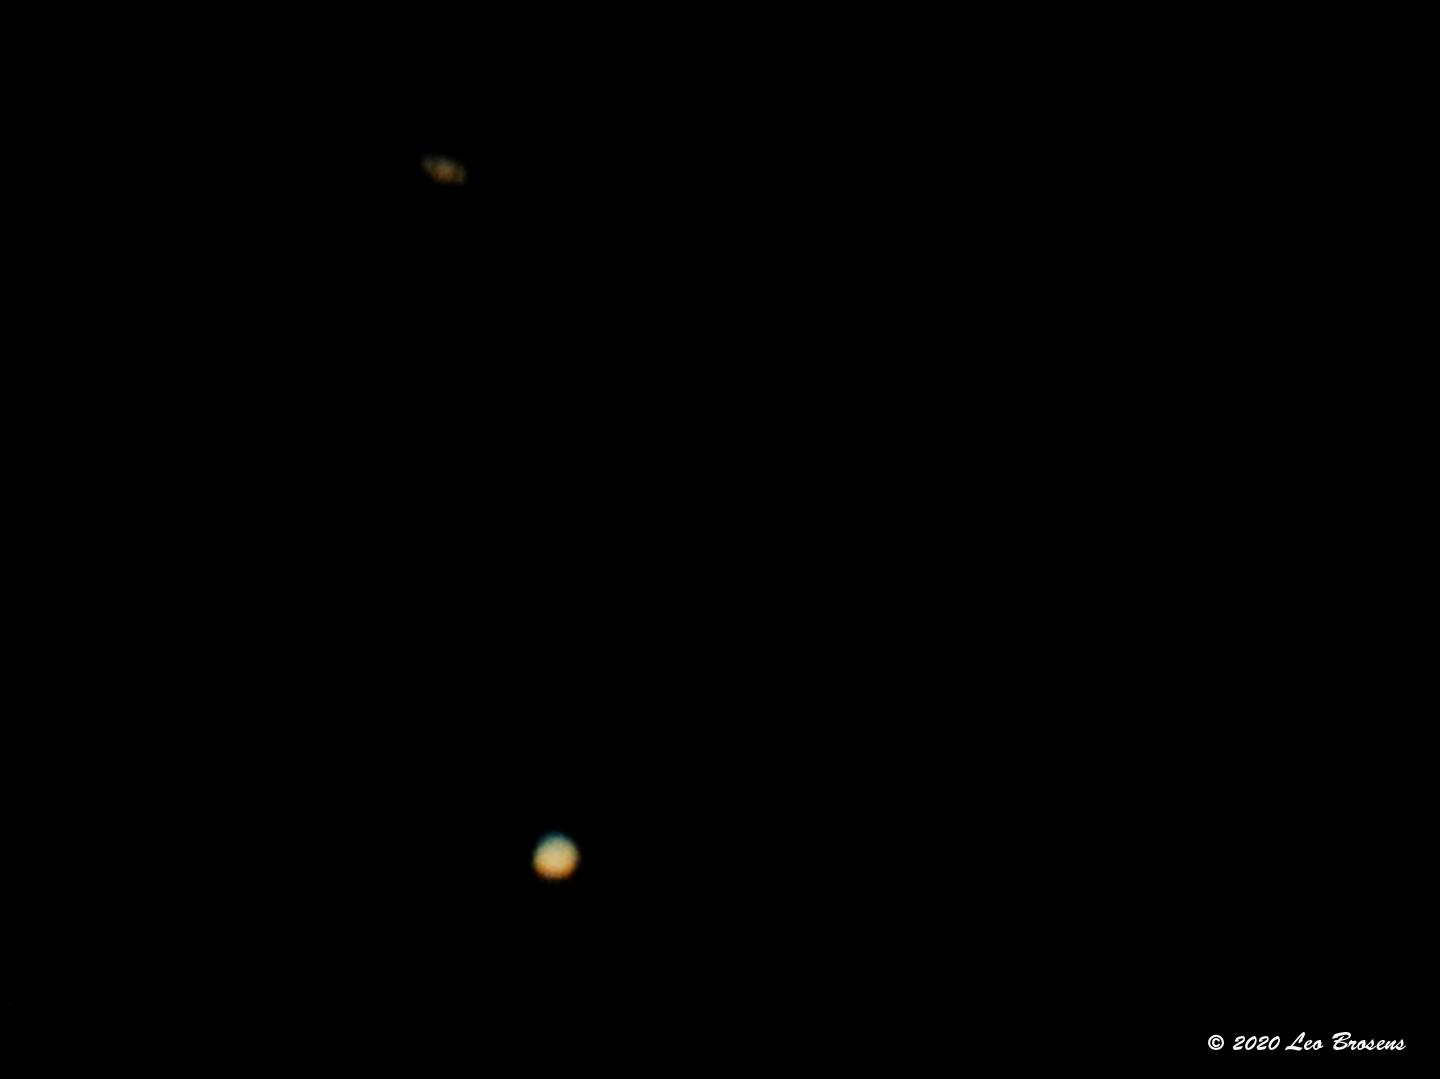 Jupiter-Saturnus-20201220g1440YSXX9048acrfb.jpg